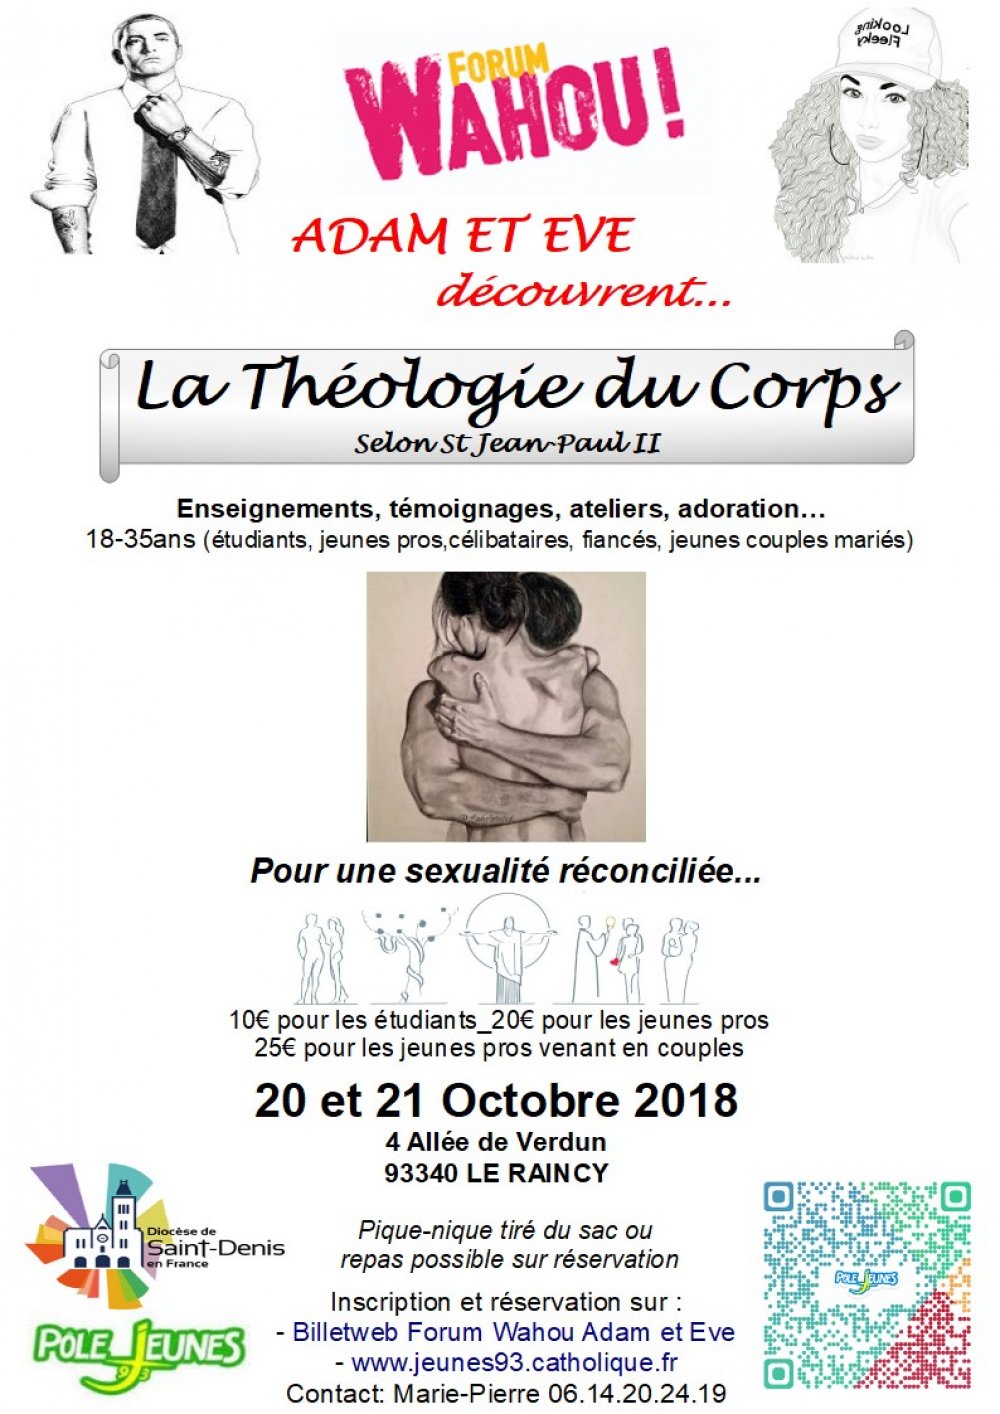 Forum Wahou Adam et Eve découvrent la Théologie du Corps – les 20 & 21 octobre 2018 au Raincy (93)